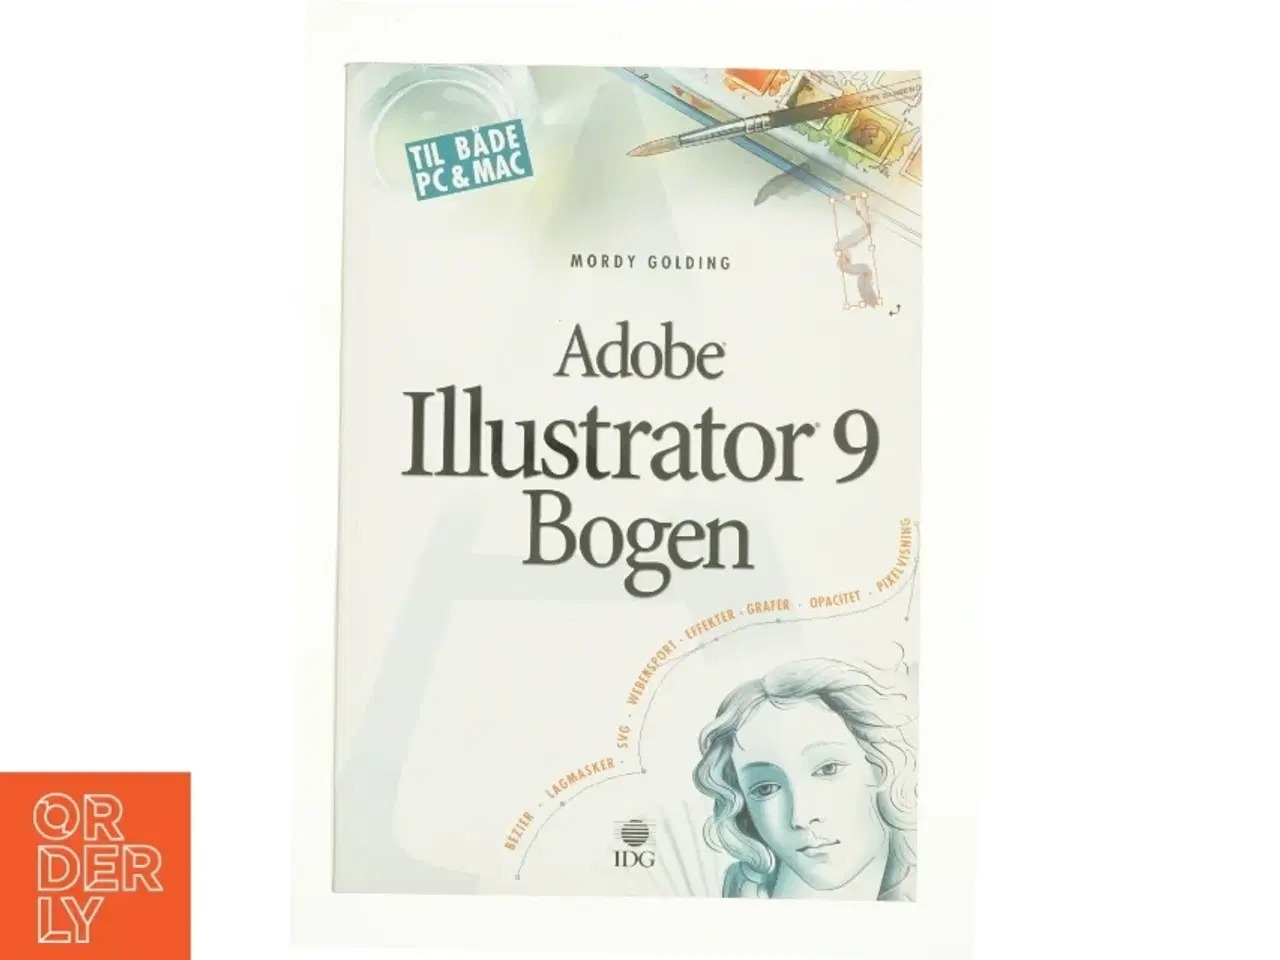 Billede 1 - Adobe illustrator 9 bogen af Mordy Golding (Bog)